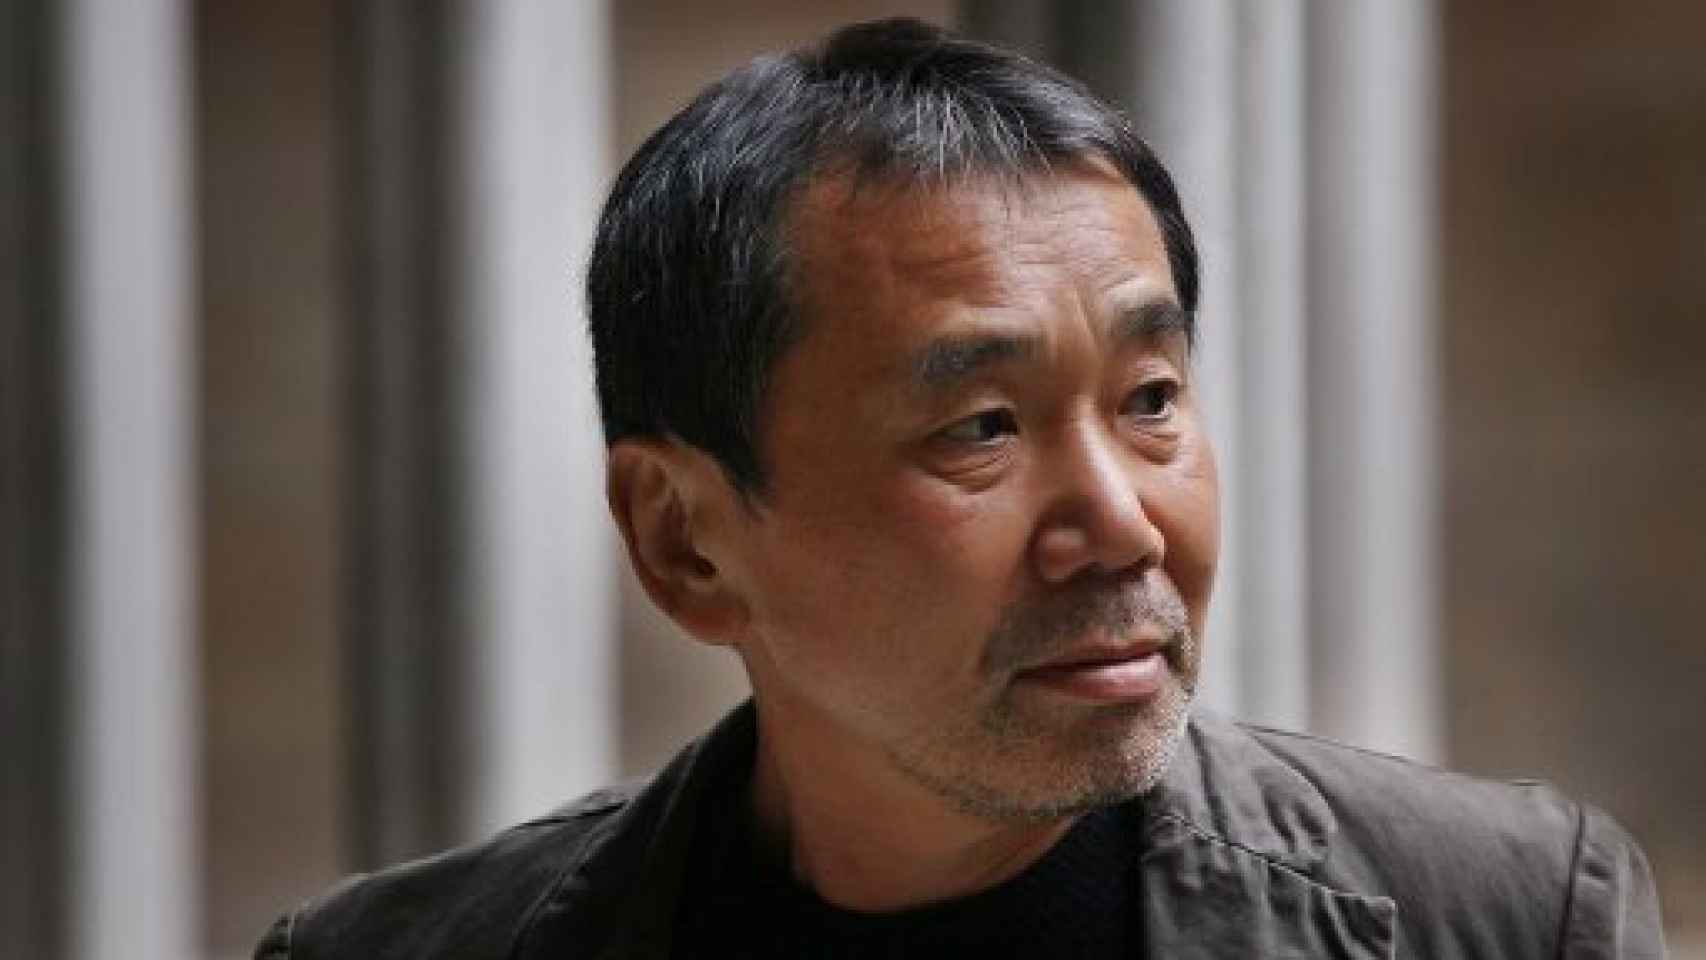 Image: Murakami viaja hacia la eternidad